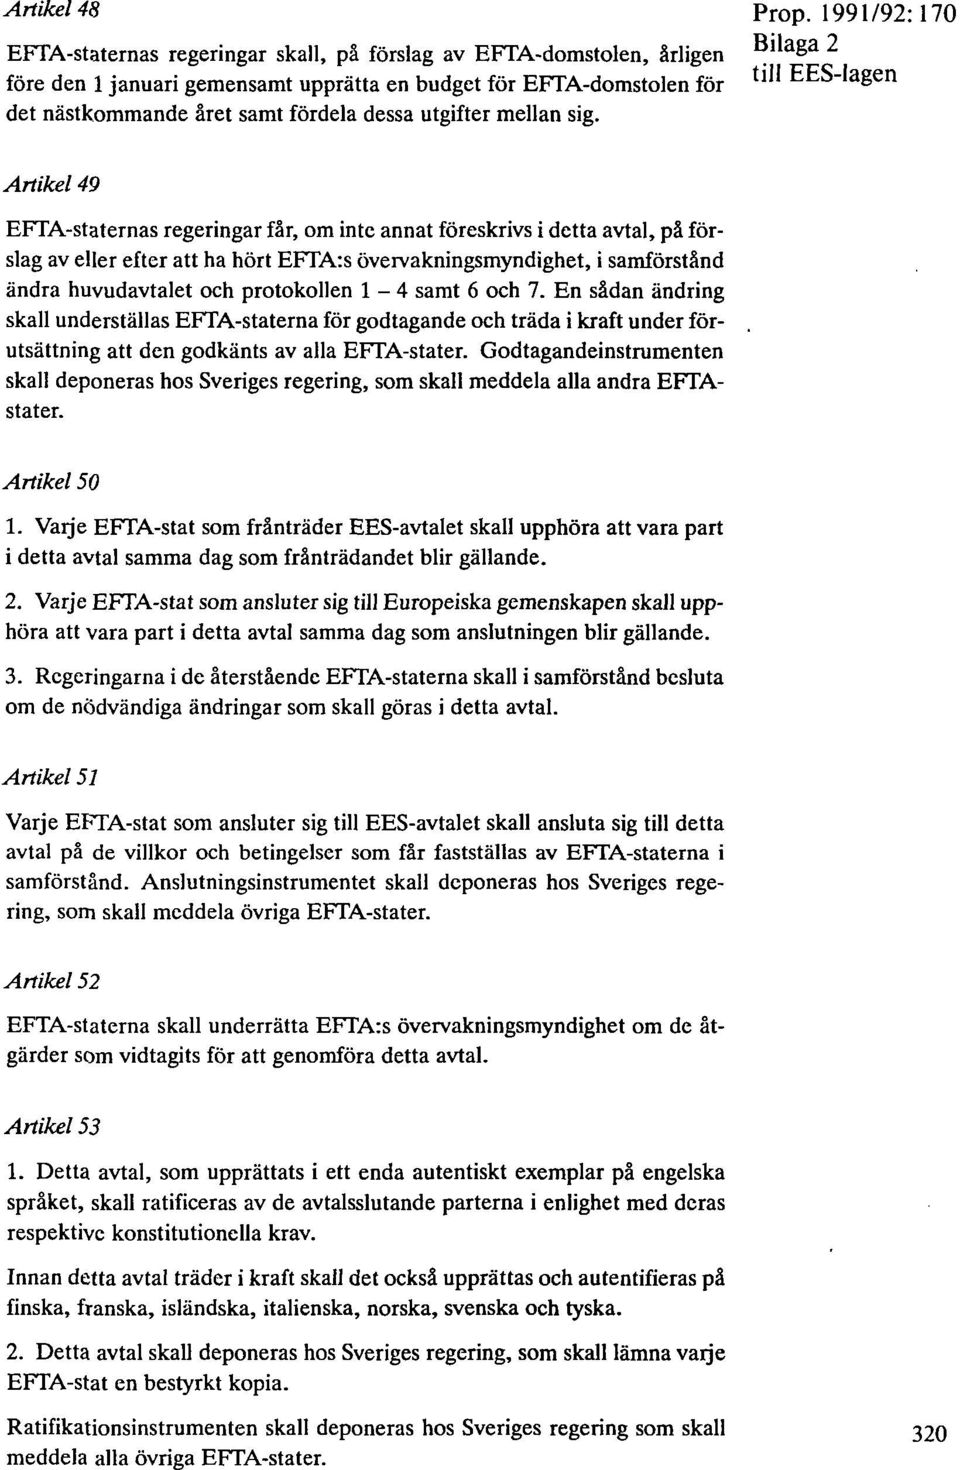 1991/92:170 Bilaga 2 Artikel 49 EFTA-staternas regeringar får, om inte annat föreskrivs i detta avtal, på förslag av eller efter att ha hört EFTA:s övervakningsmyndighet, i samförstånd ändra